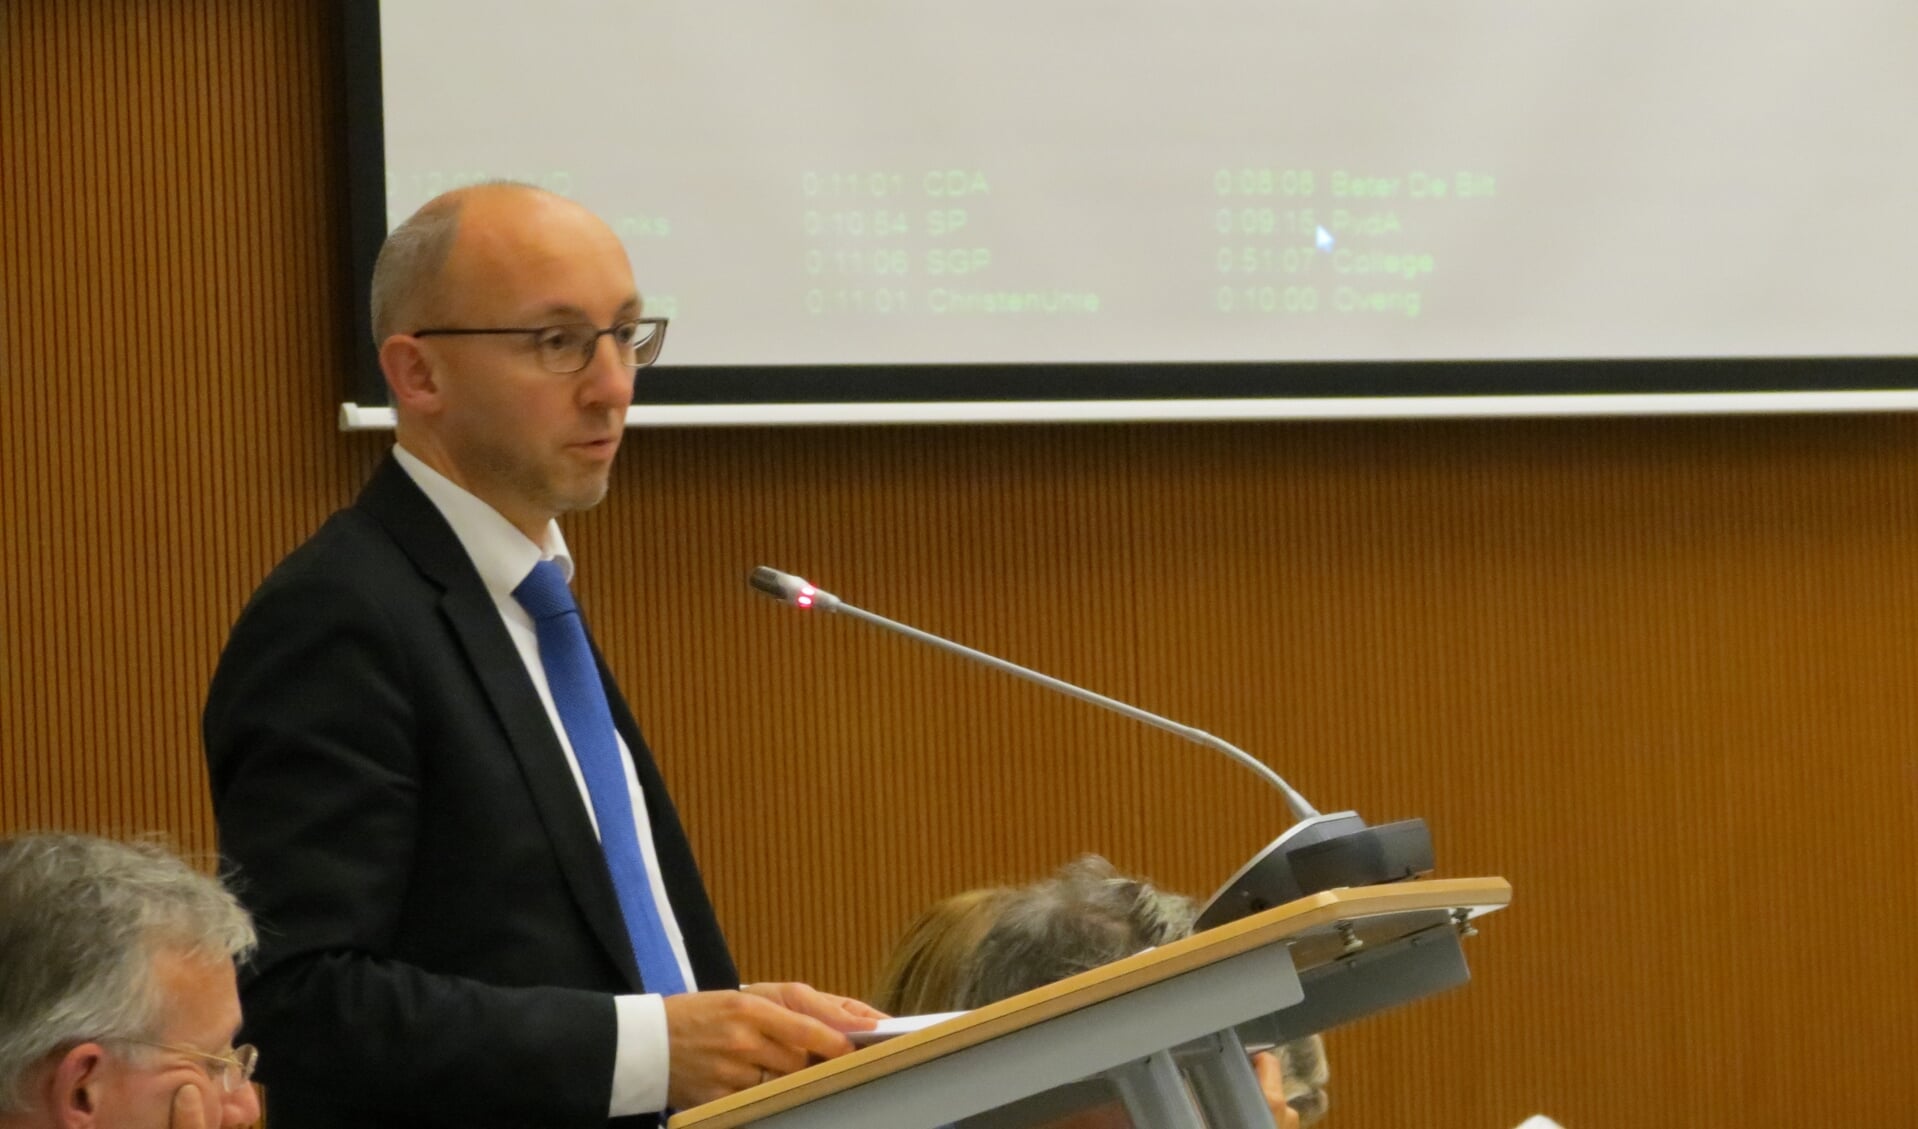 Erik van Esterik aan het woord in een gemeenteraadsvergadering.